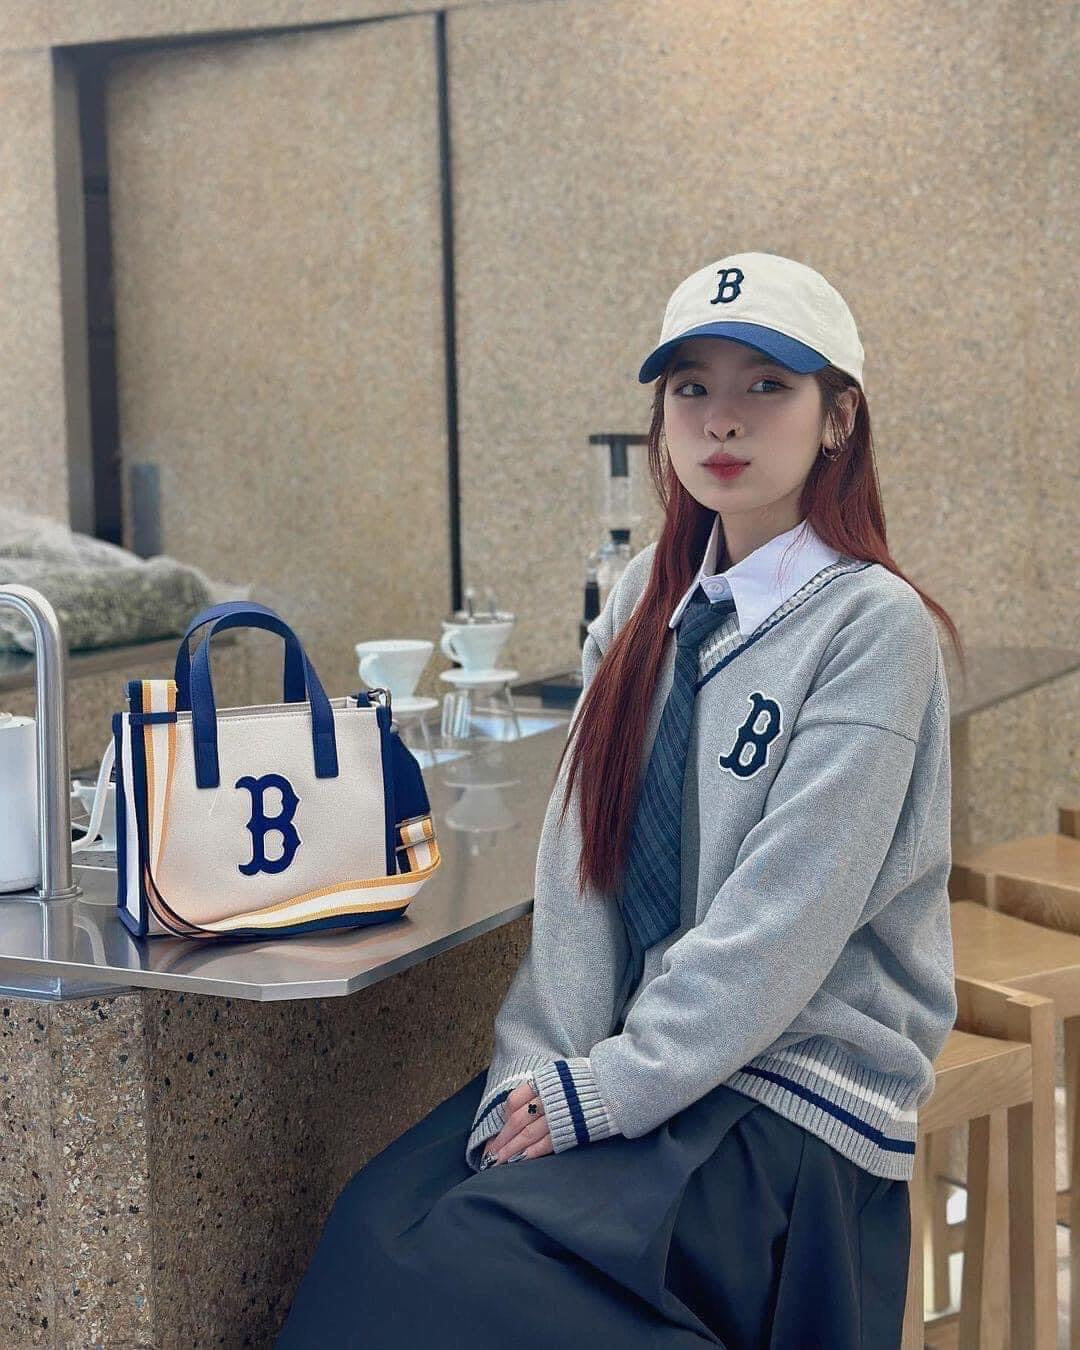 Thương hiệu thời trang Hàn Quốc MLB ra mắt cửa hàng đầu tiên tại Đà Nẵng   NỮ DOANH NHÂN  BusinessWoman Magazine